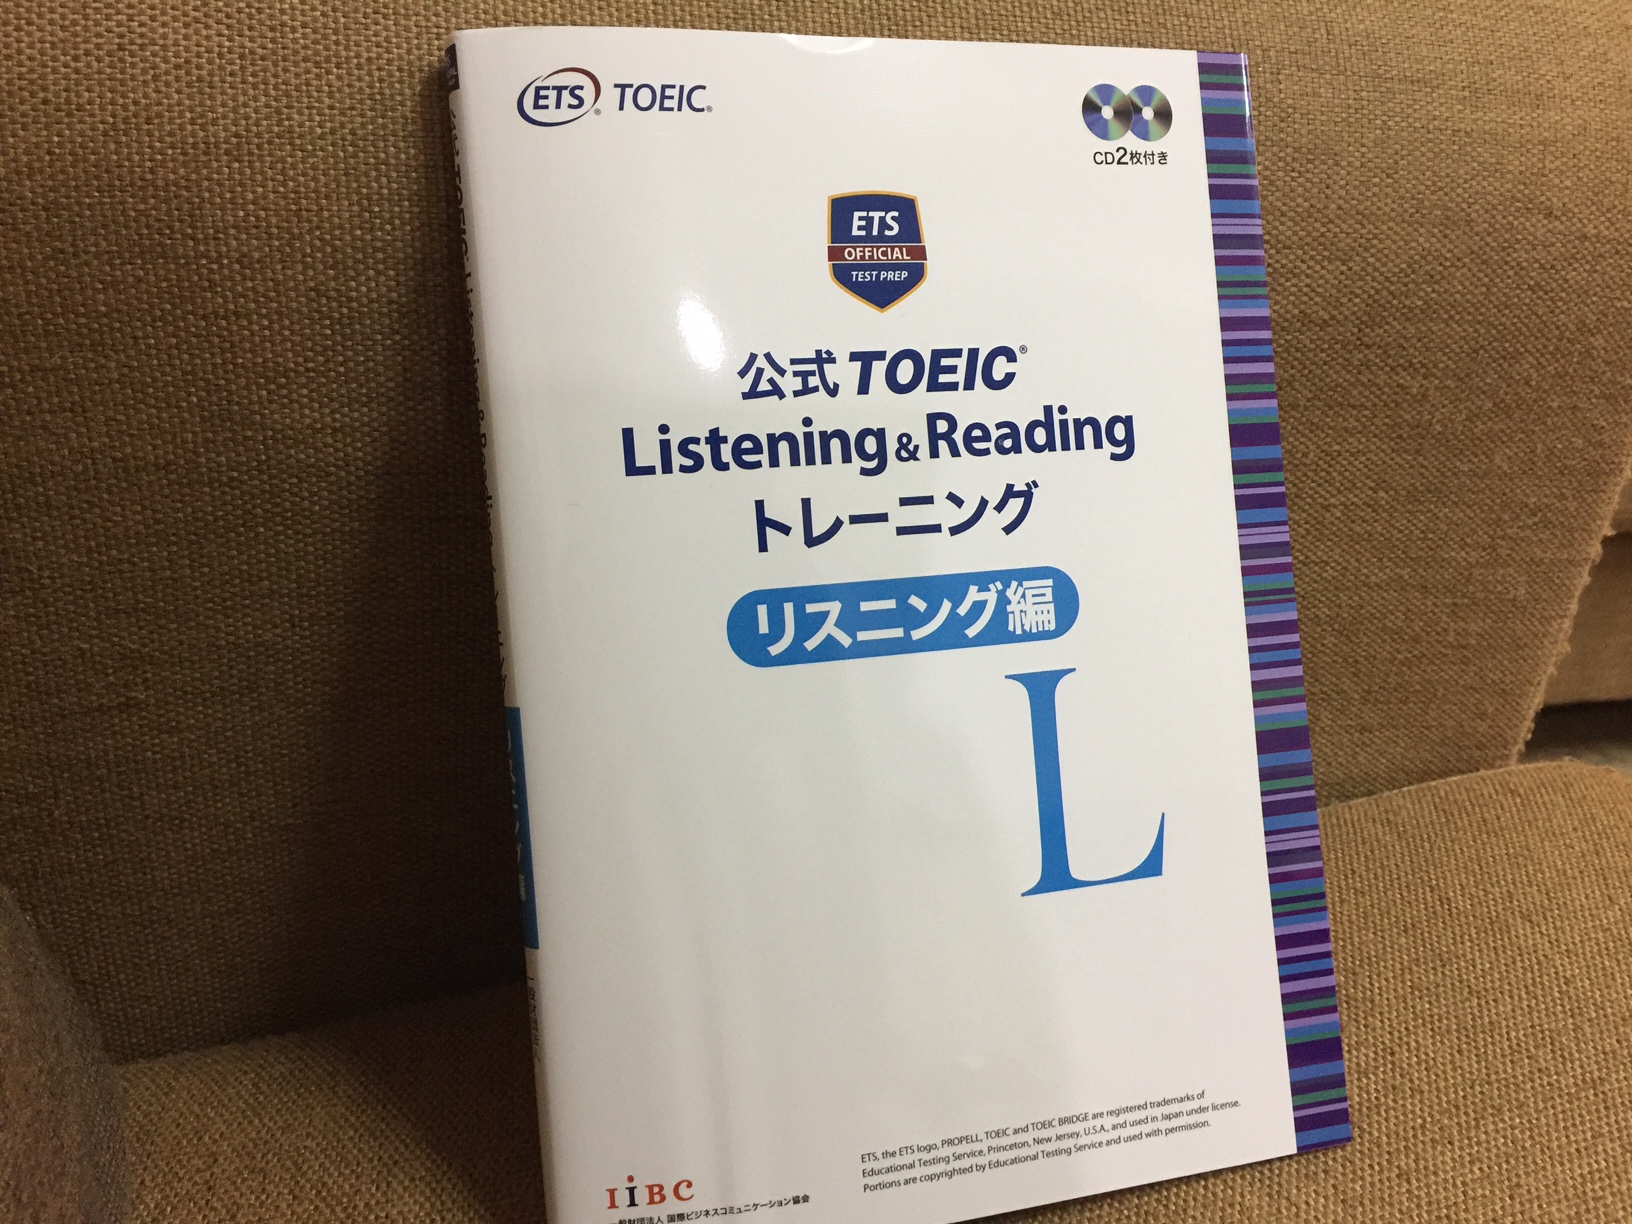 「公式 TOEIC Listening & Reading トレーニング リスニング編」の感想・レビュー ①